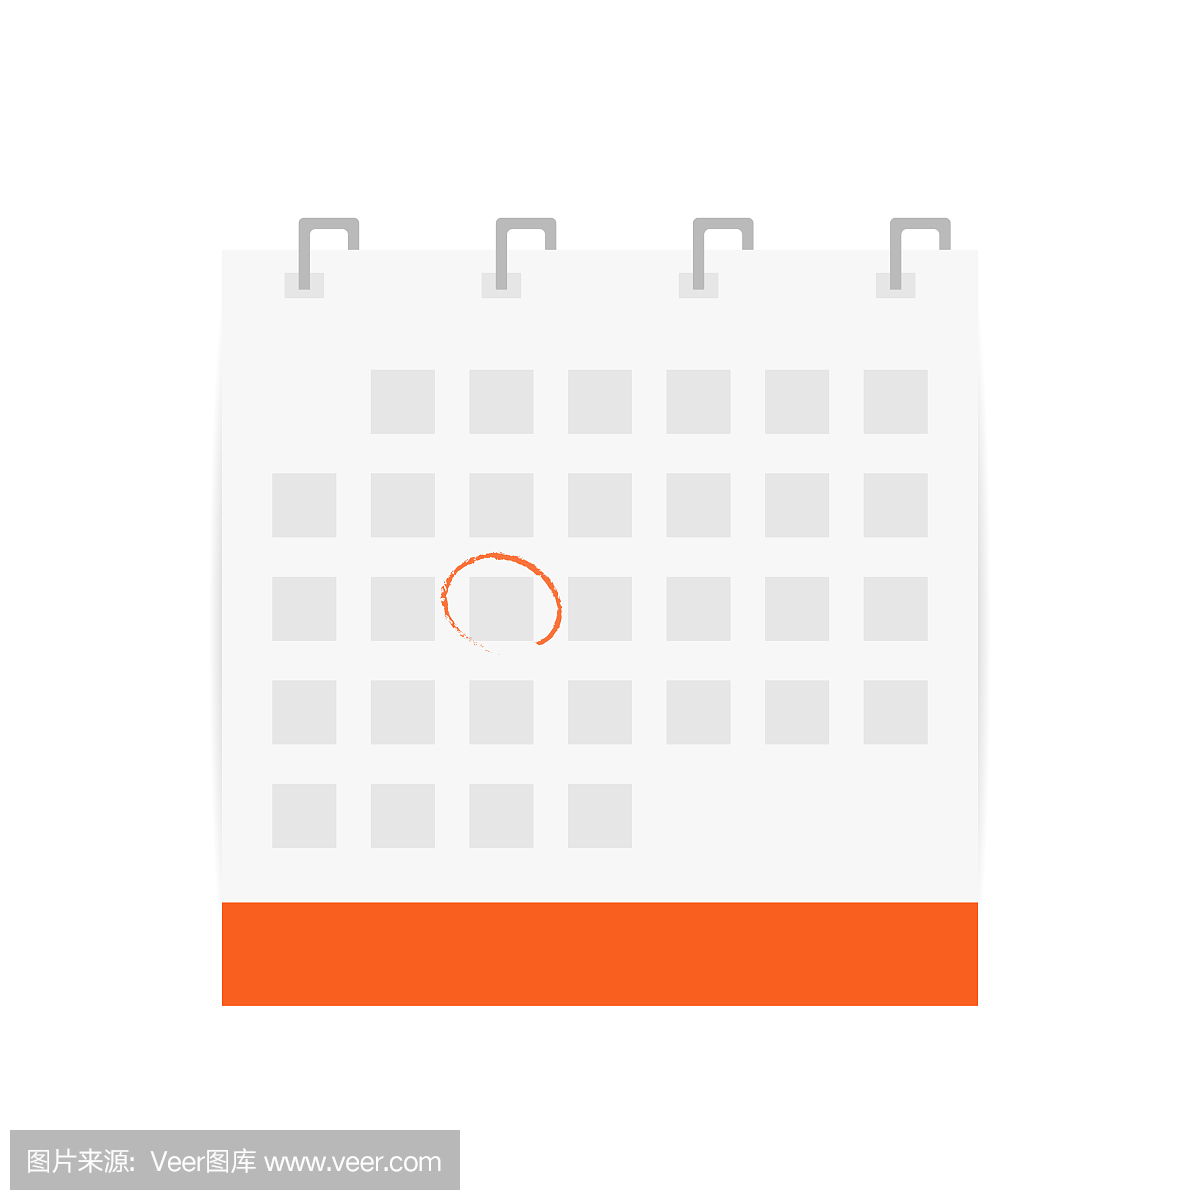 带圆圈日期的日历图标。日历符号孤立在白色背